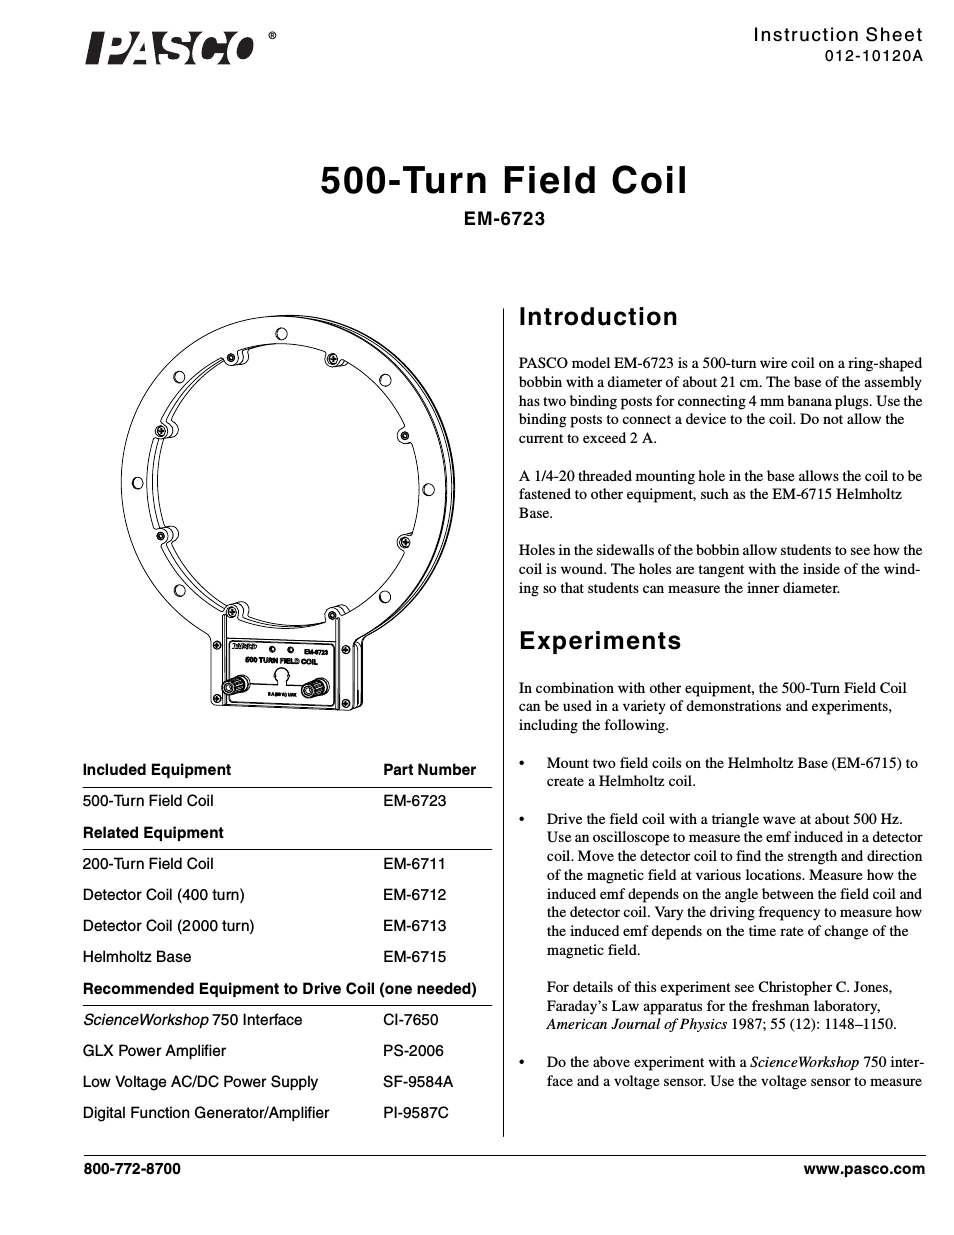 EM-6723 500-Turn Field Coil